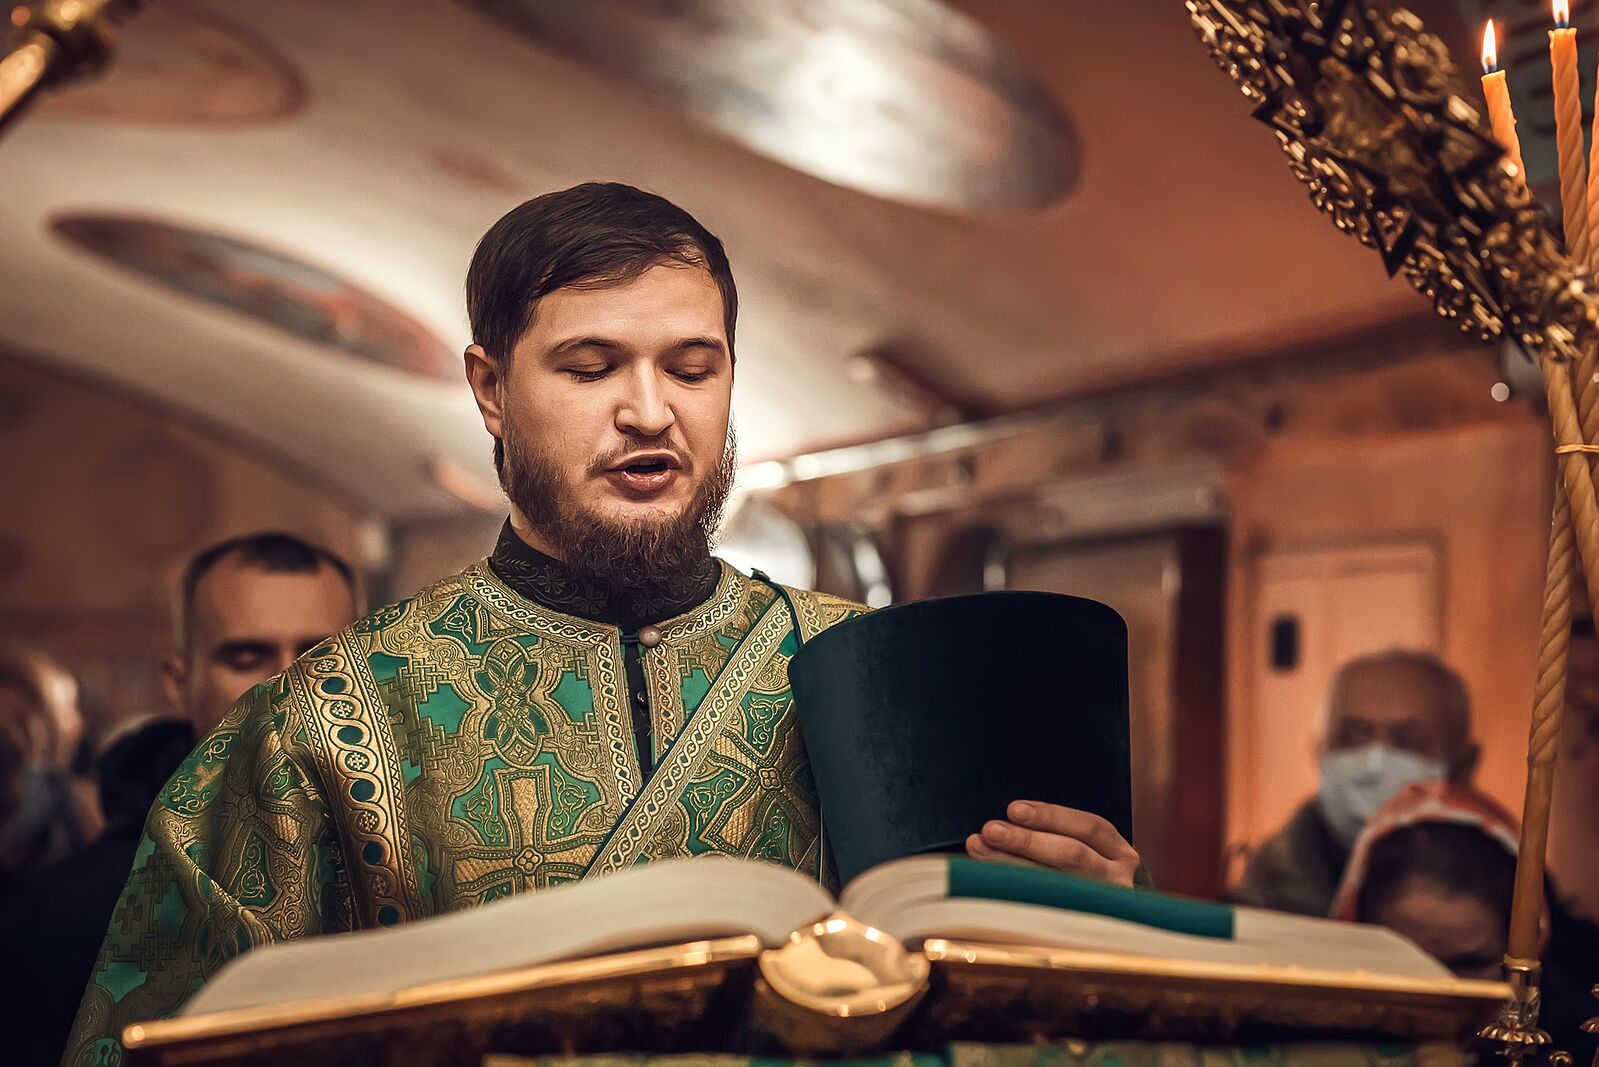 Un compositeur ukrainien a remporté le Concours international des compositeurs de musique chrétienne, tenu en ligne